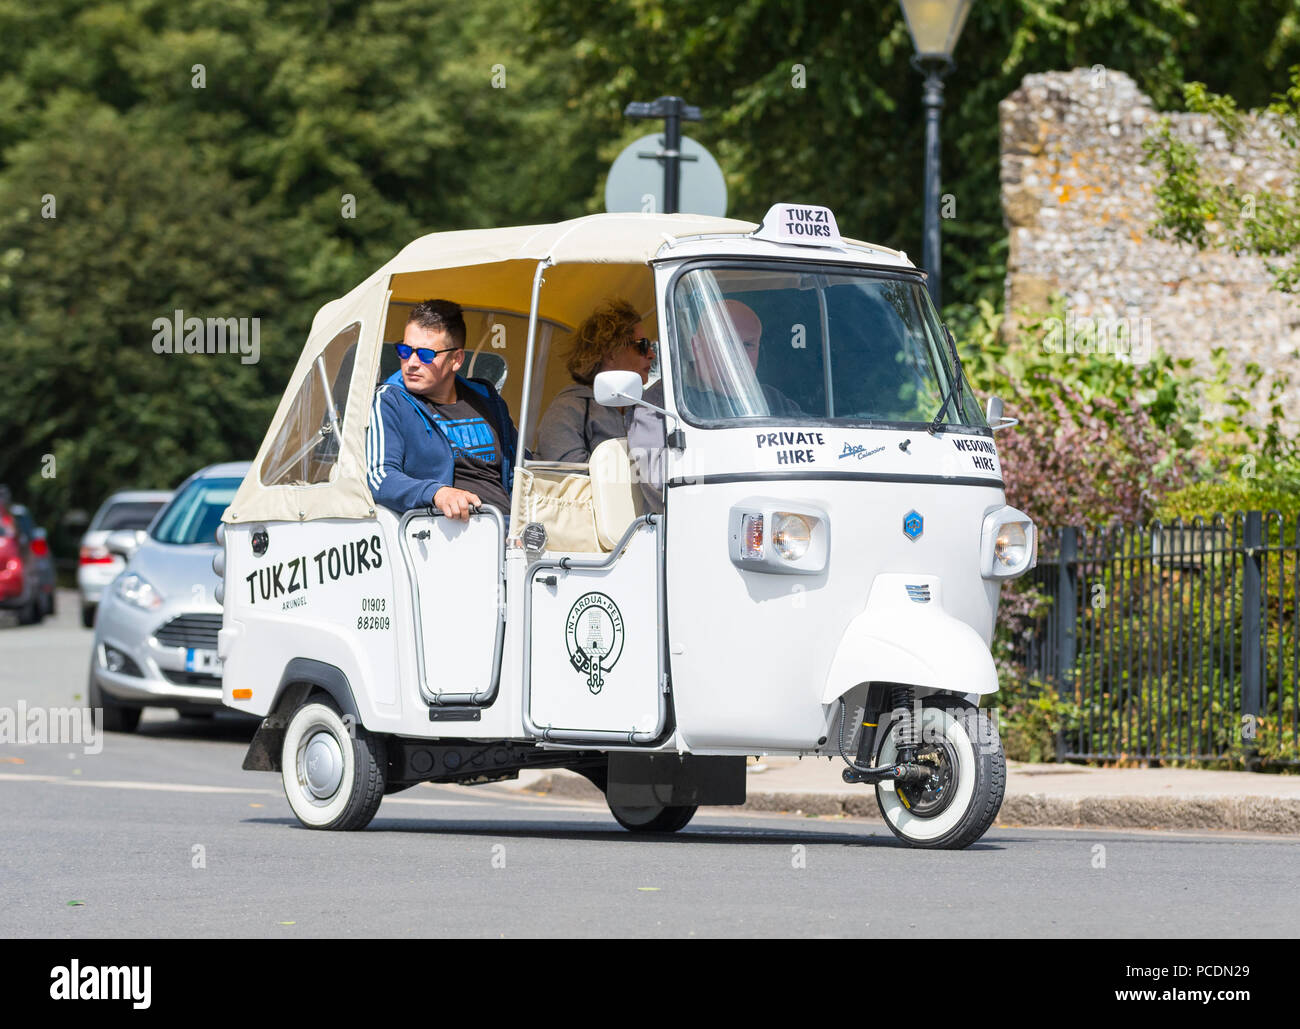 Les personnes ayant un tour de ville dans un Piaggio Ape Calessino 3 chariot (communément appelé un Tuk Tuk) véhicule d'Tukzi Tours in Arundel, West Sussex, UK. Banque D'Images